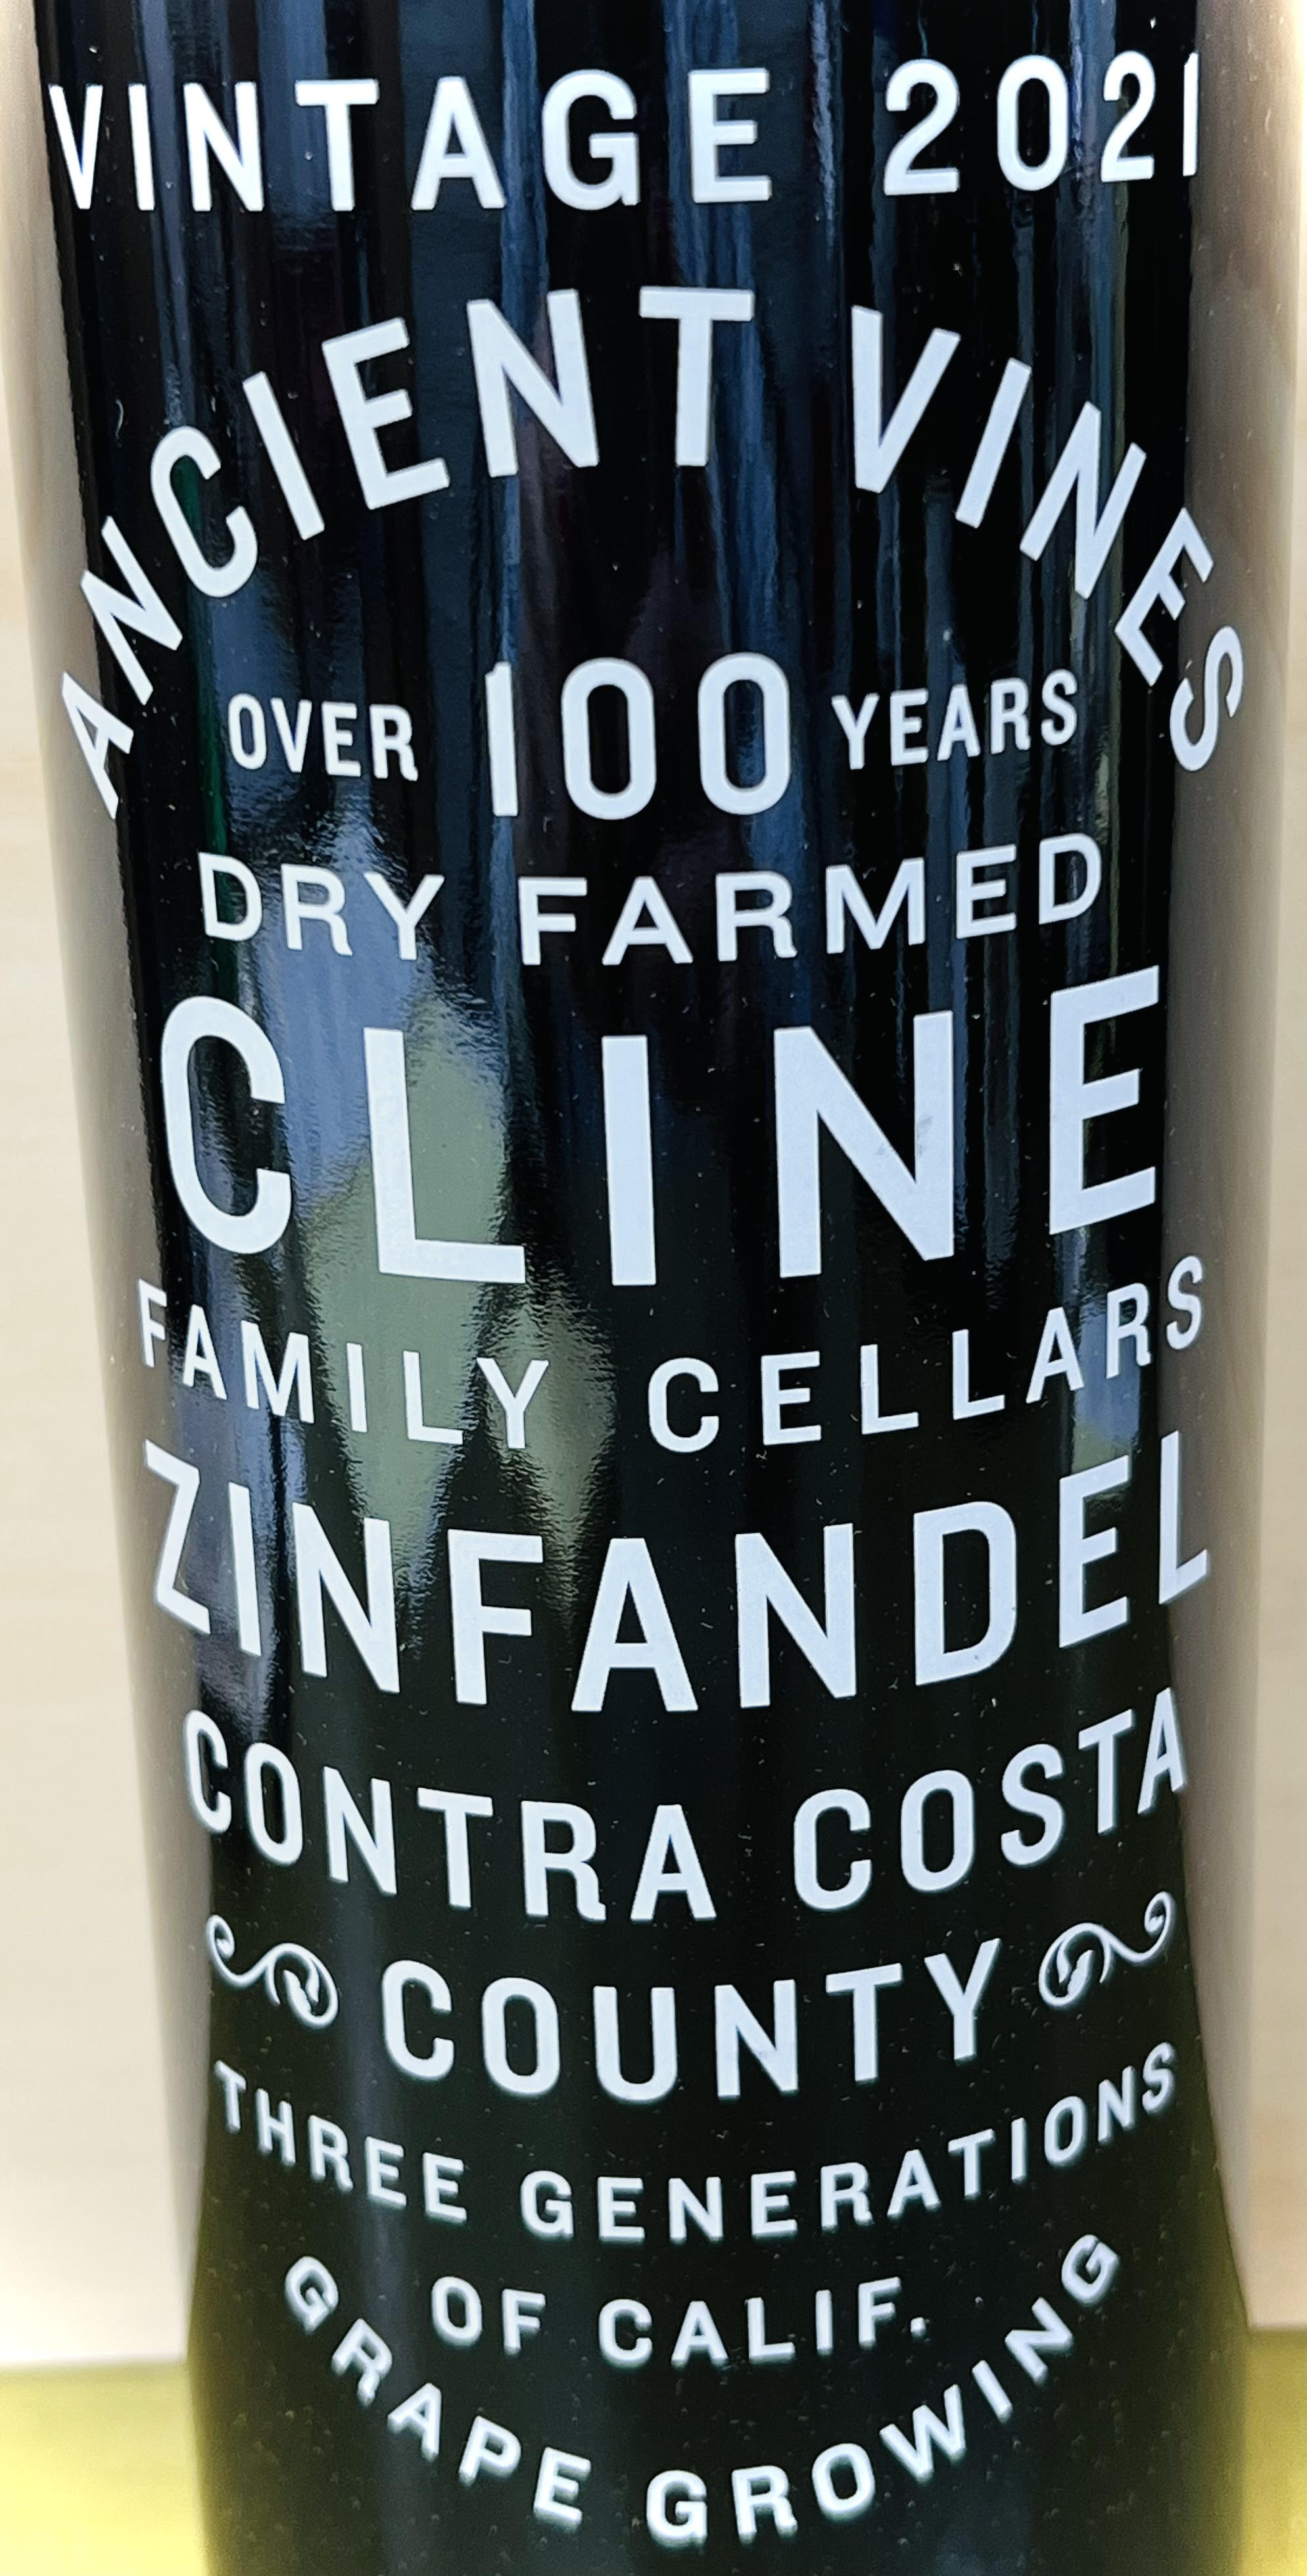 Cline Ancient Vines Contra Costa Zinfandel 2021